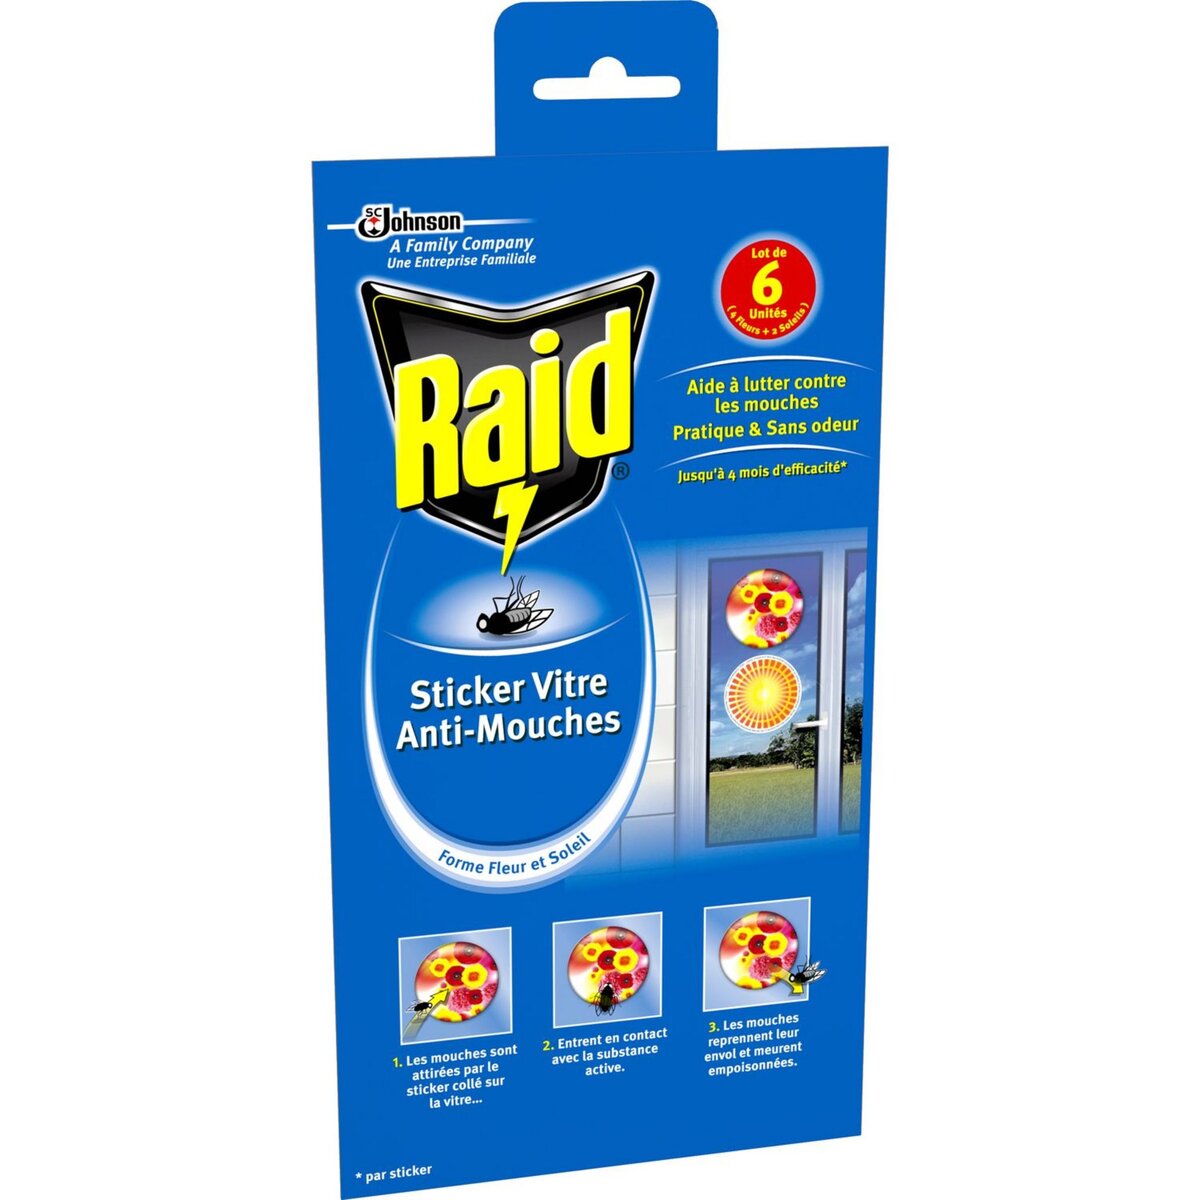 RAID Stickers fleurs vitre anti-mouches efficace 6x4 mois 6